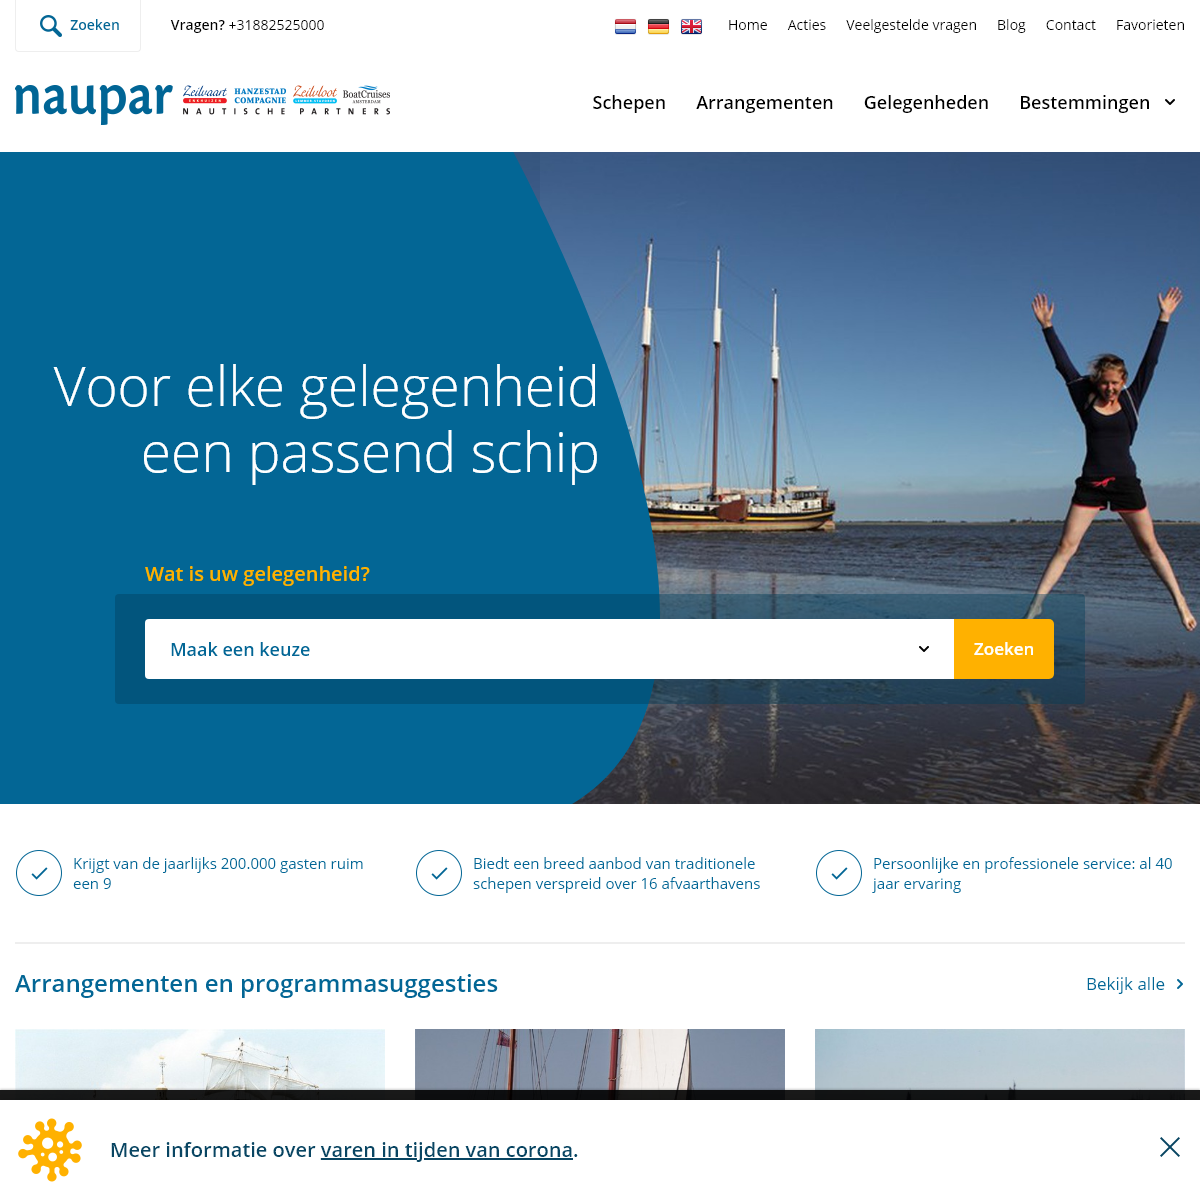 A complete backup of naupar.nl